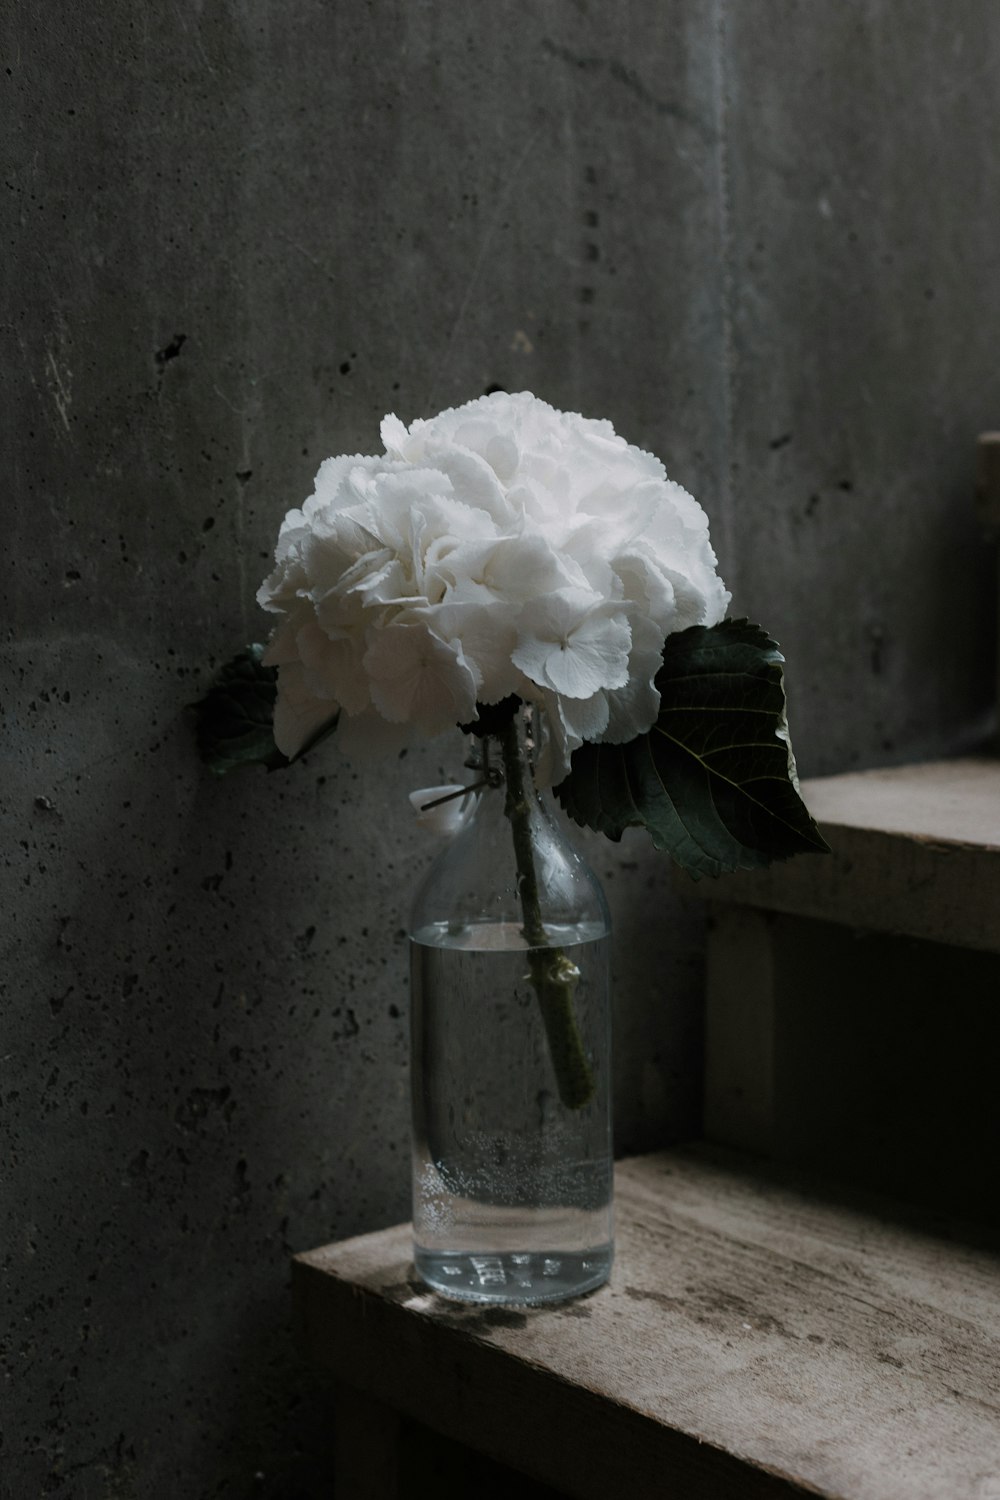 white petaled flower on glass jar